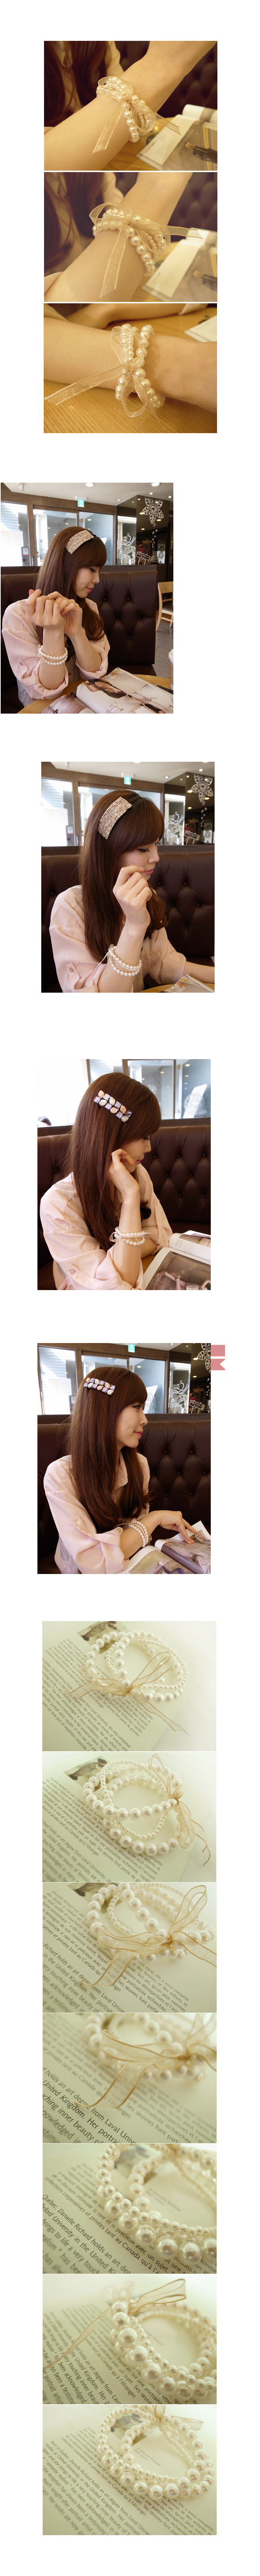 韓國 NaniWorld 珍珠風絲帶手環 #919